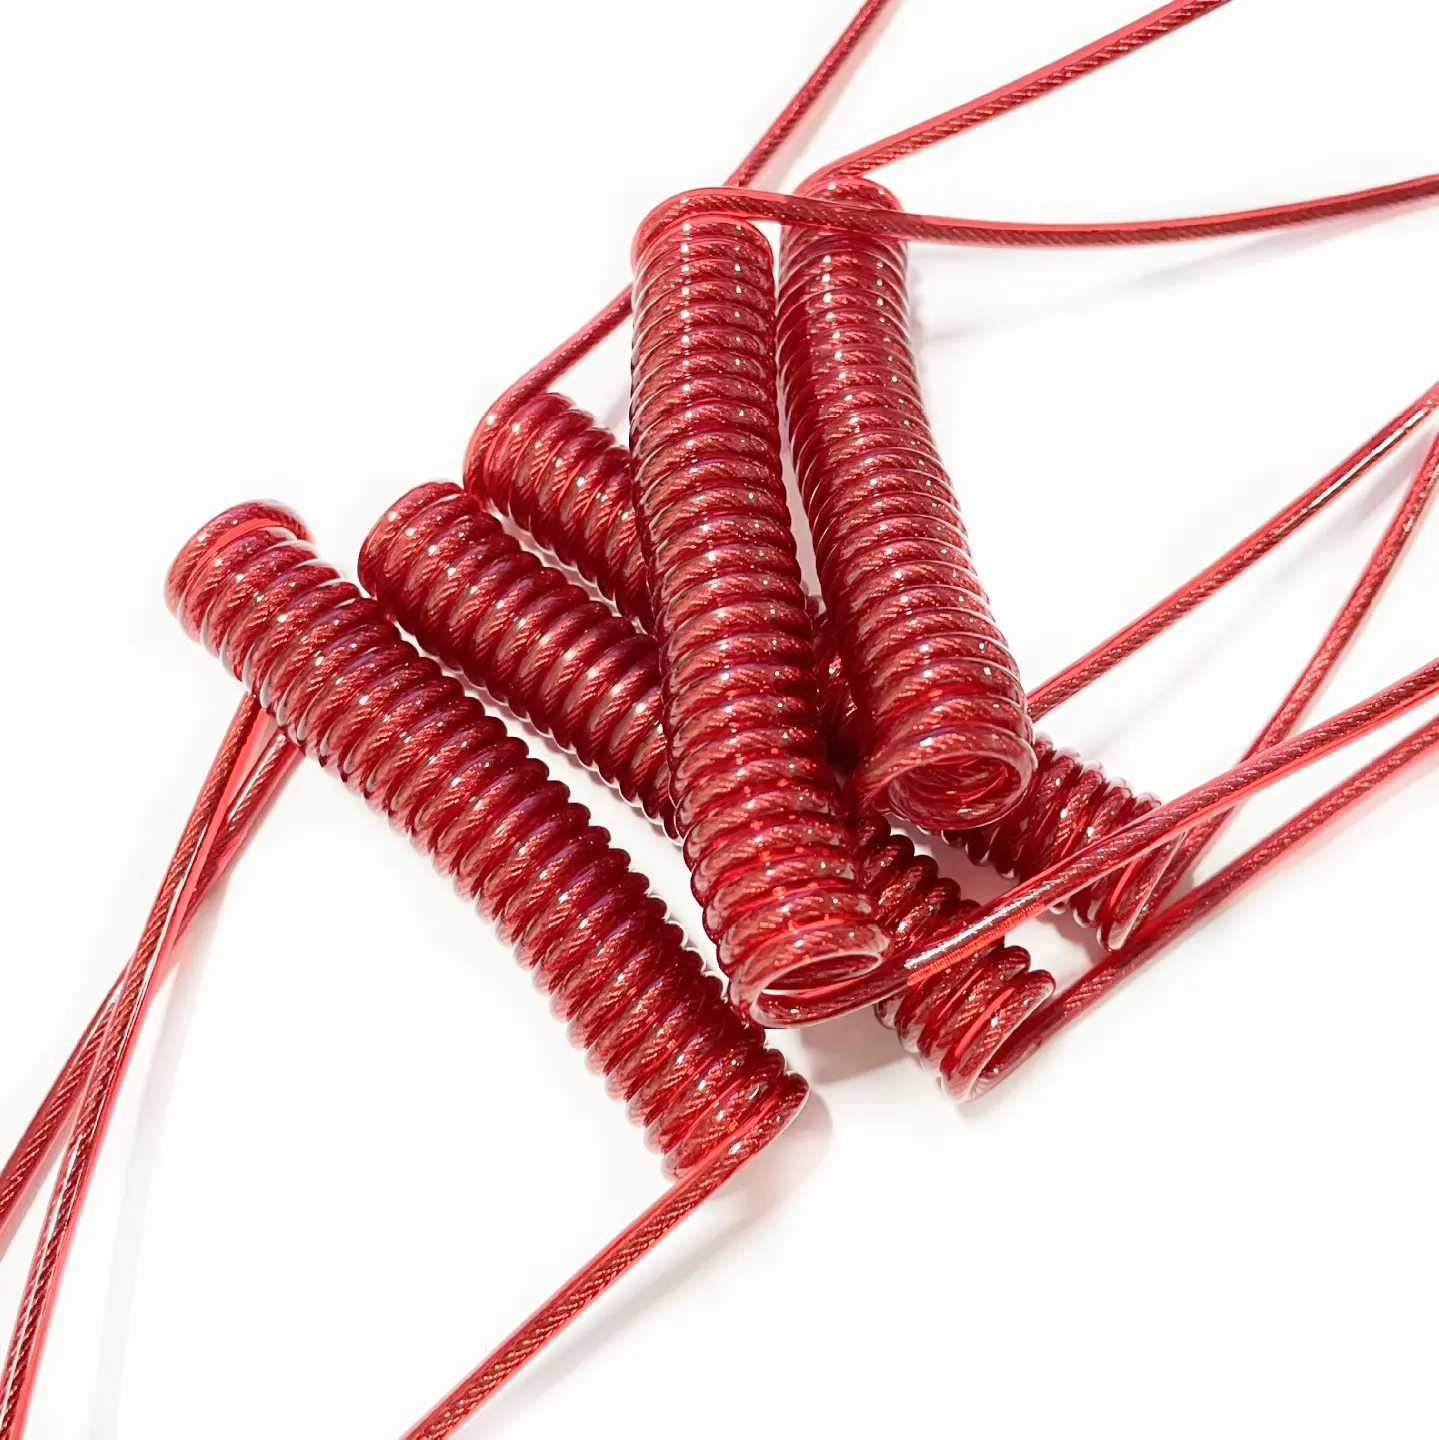 PU/PVC dekoratif Spiral kablo tel ile çok şartname anahtarlık kordon renkli kırmızı parlak çelik bahar halat